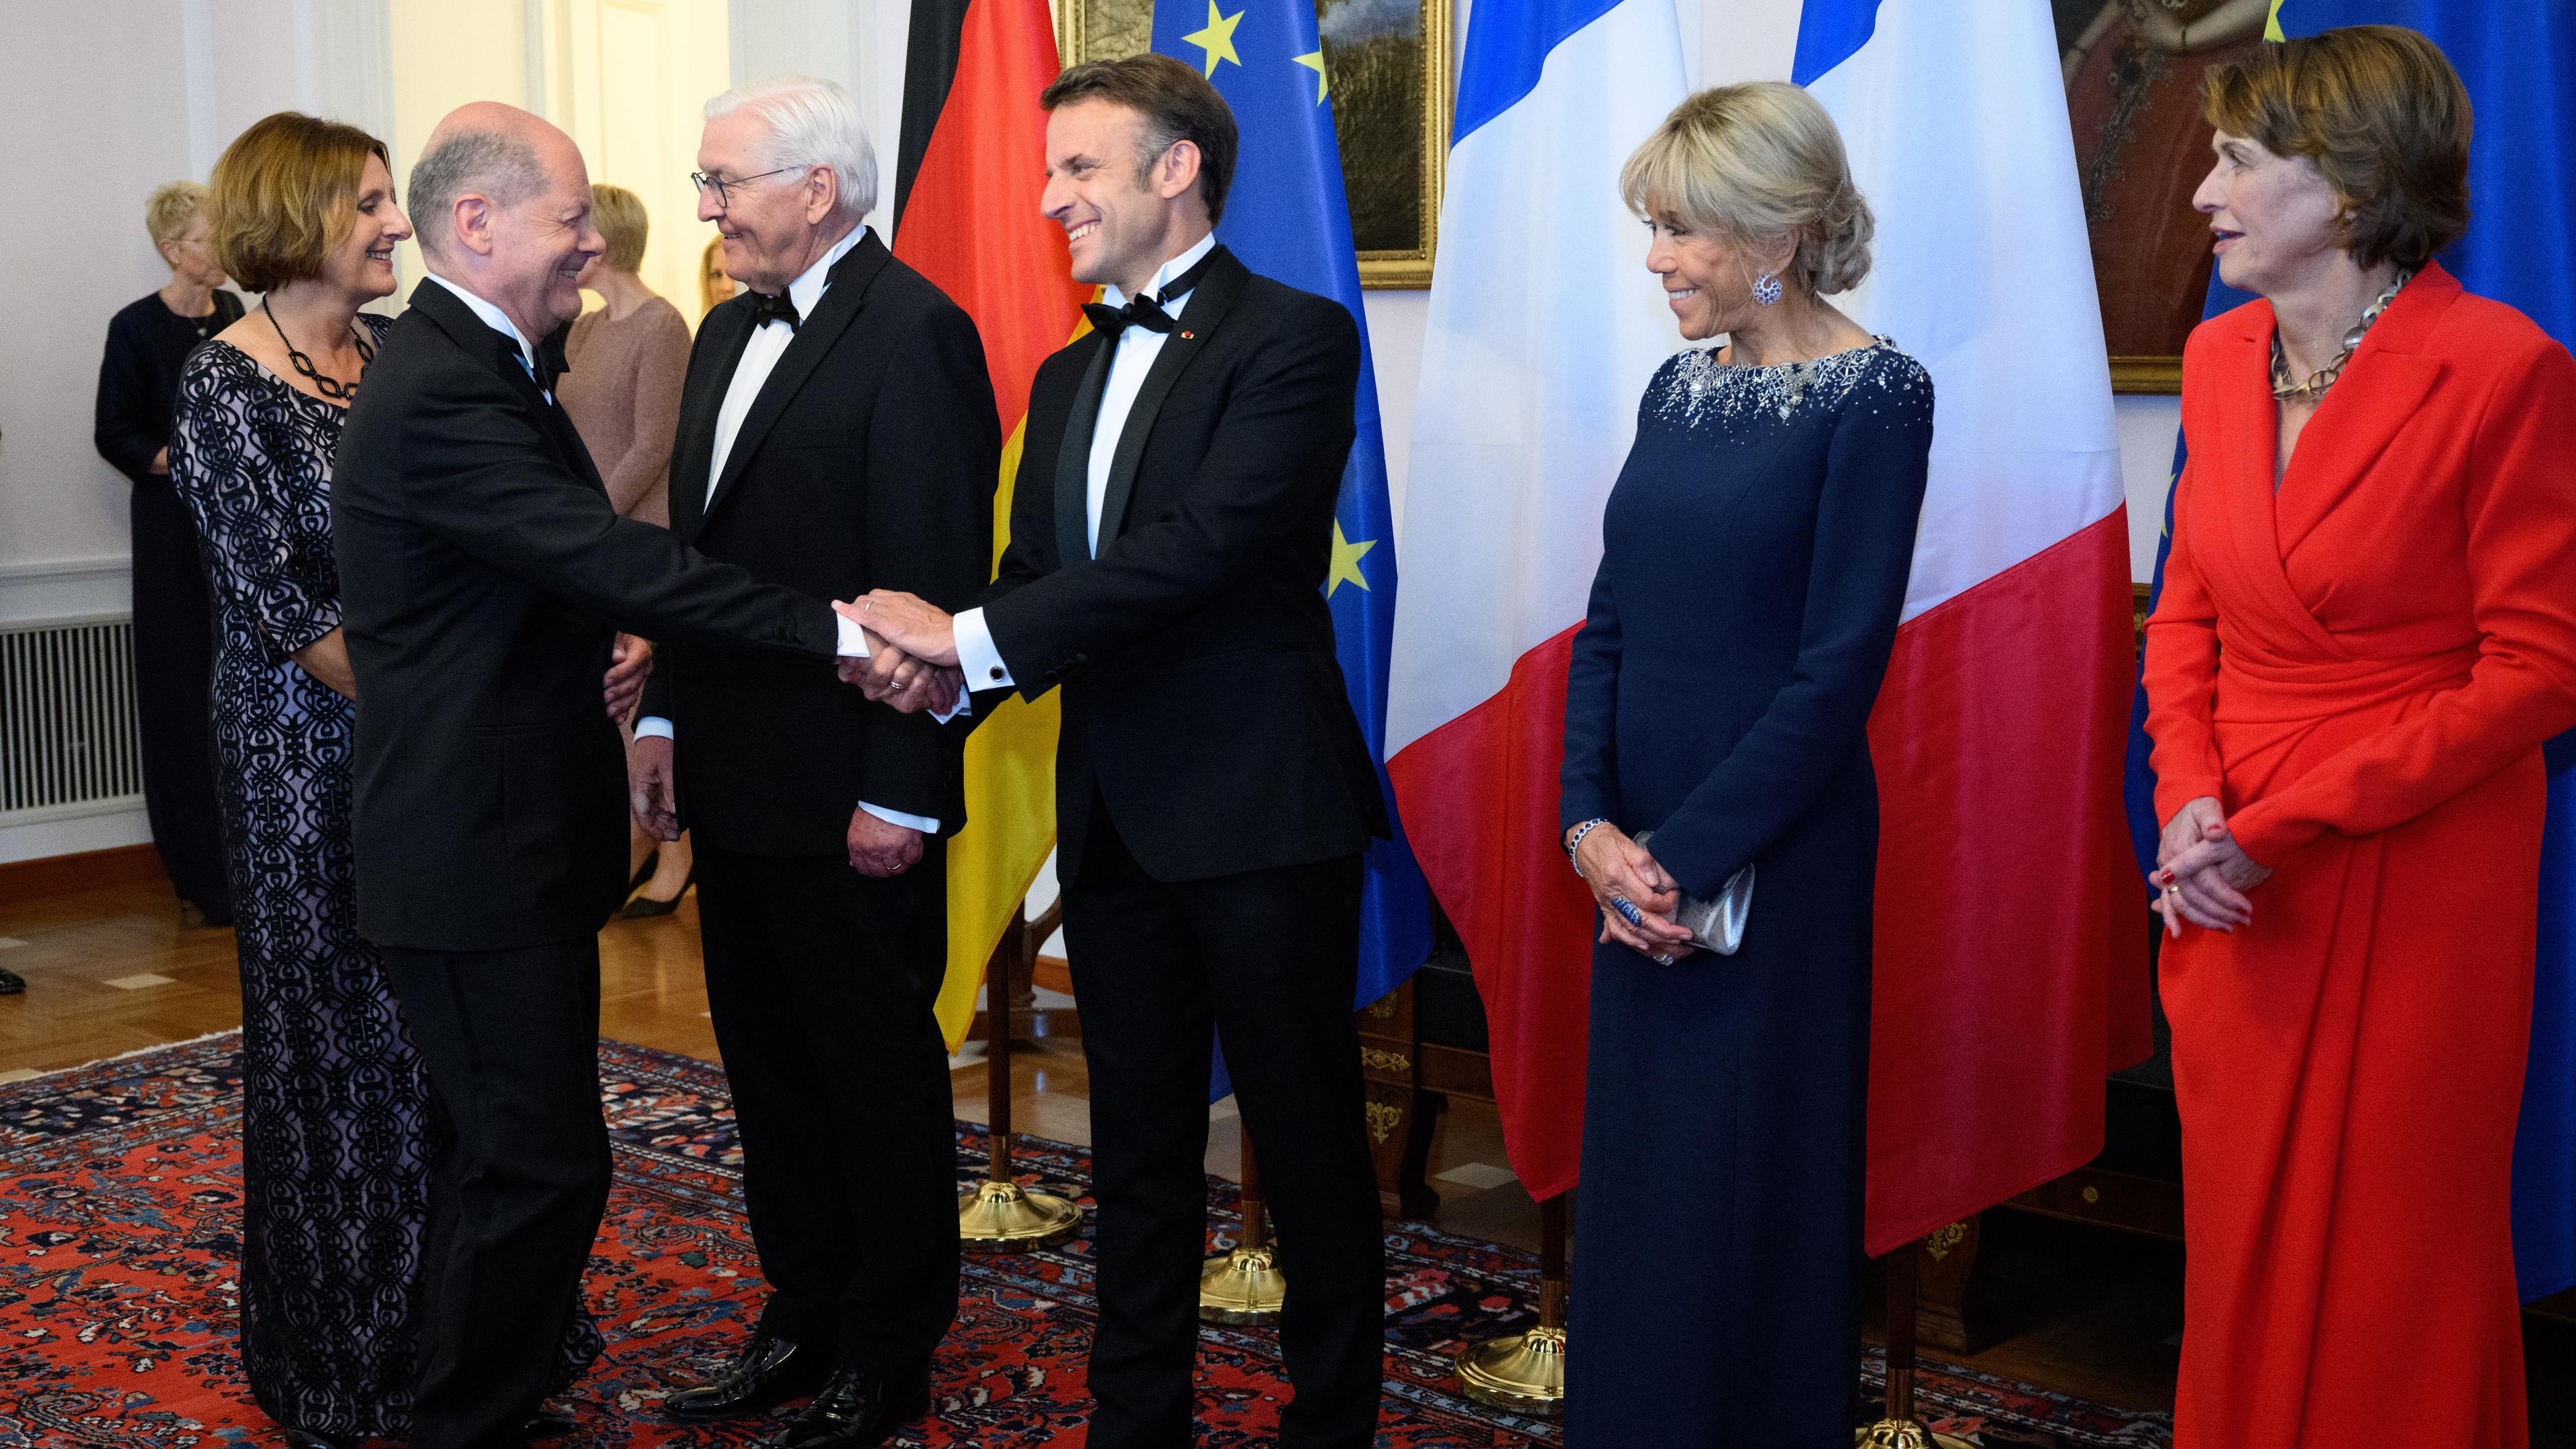 Kanzler Olaf Scholz und Frankreichs Präsident Emmanuel Macron begrüßen sich beim Defilee im Schloss Bellevue